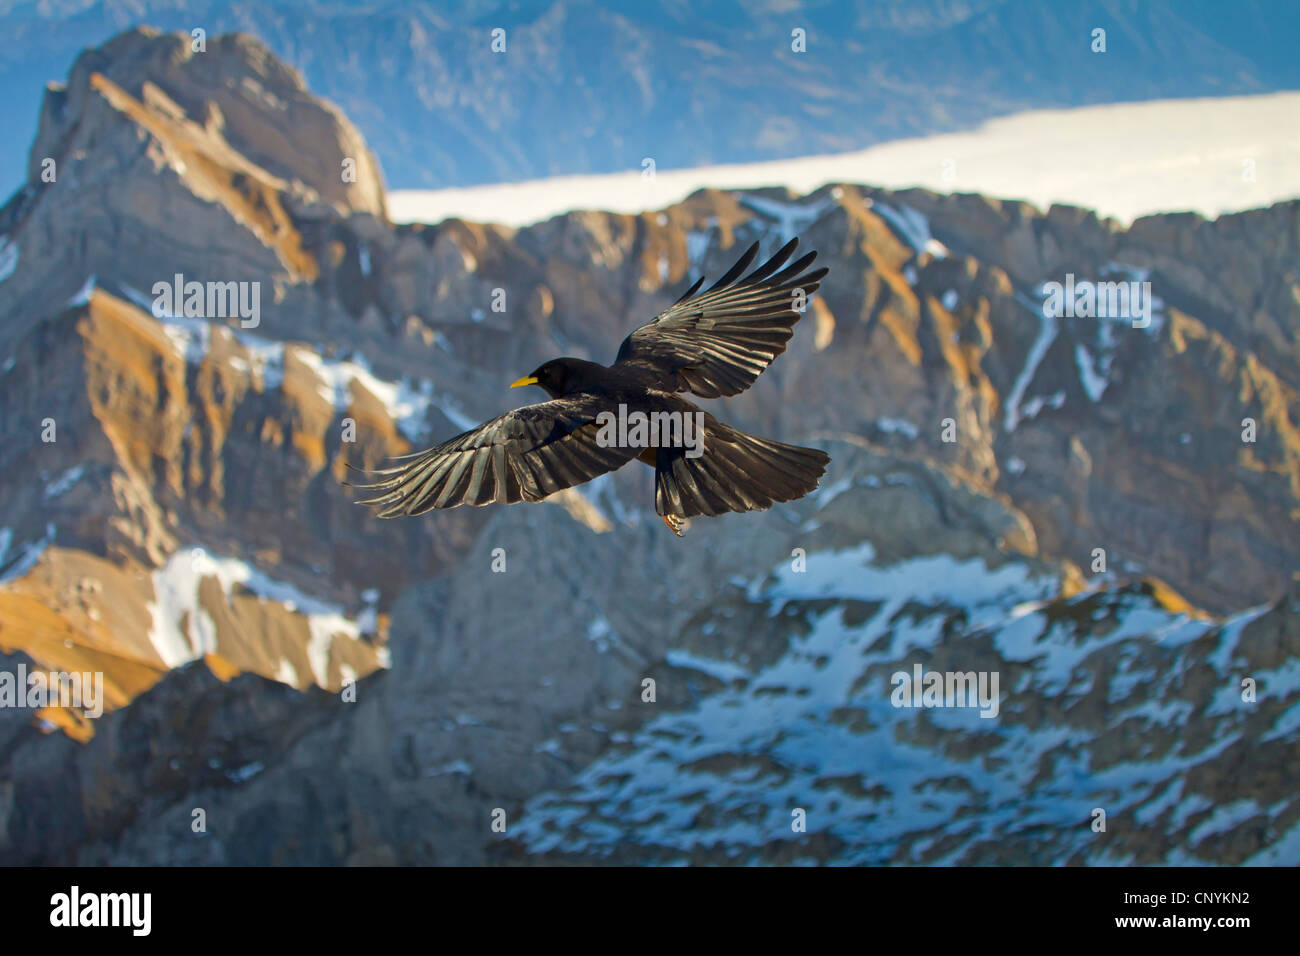 alpine chough (Pyrrhocorax graculus), flying in the high mountains, Switzerland, Sankt Gallen, Saentis Stock Photo